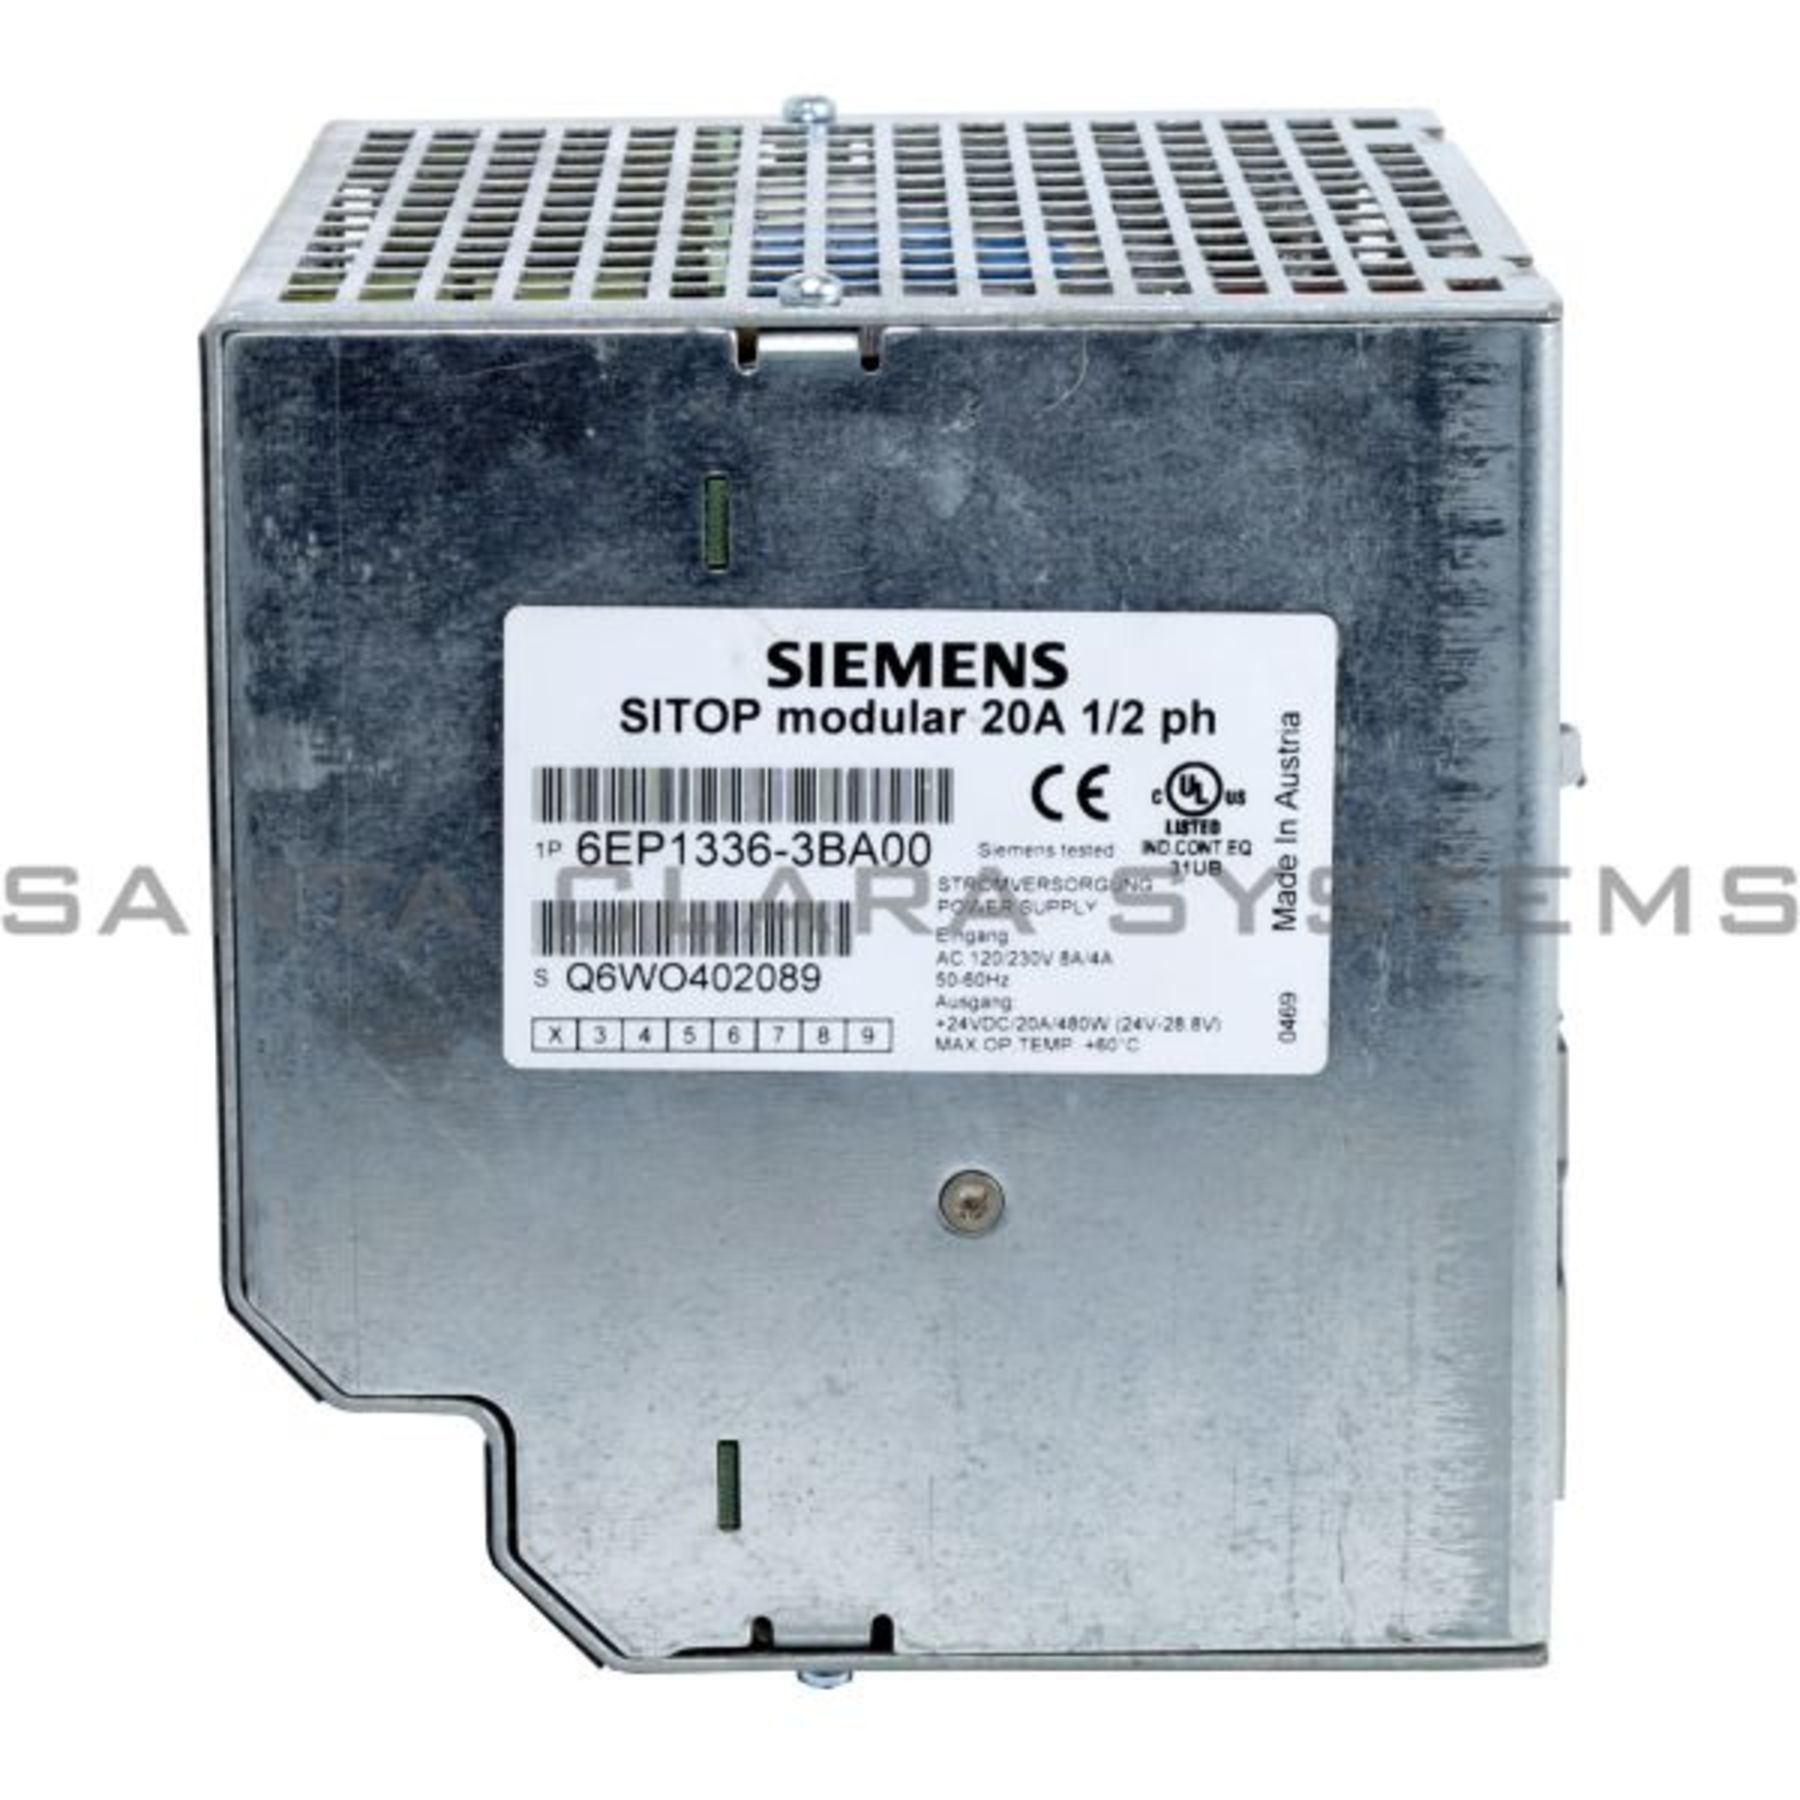 01 Power Supply Siemens SITOP modular 6EP1 336-3BA00 6EP1336-3BA00 20A E used 